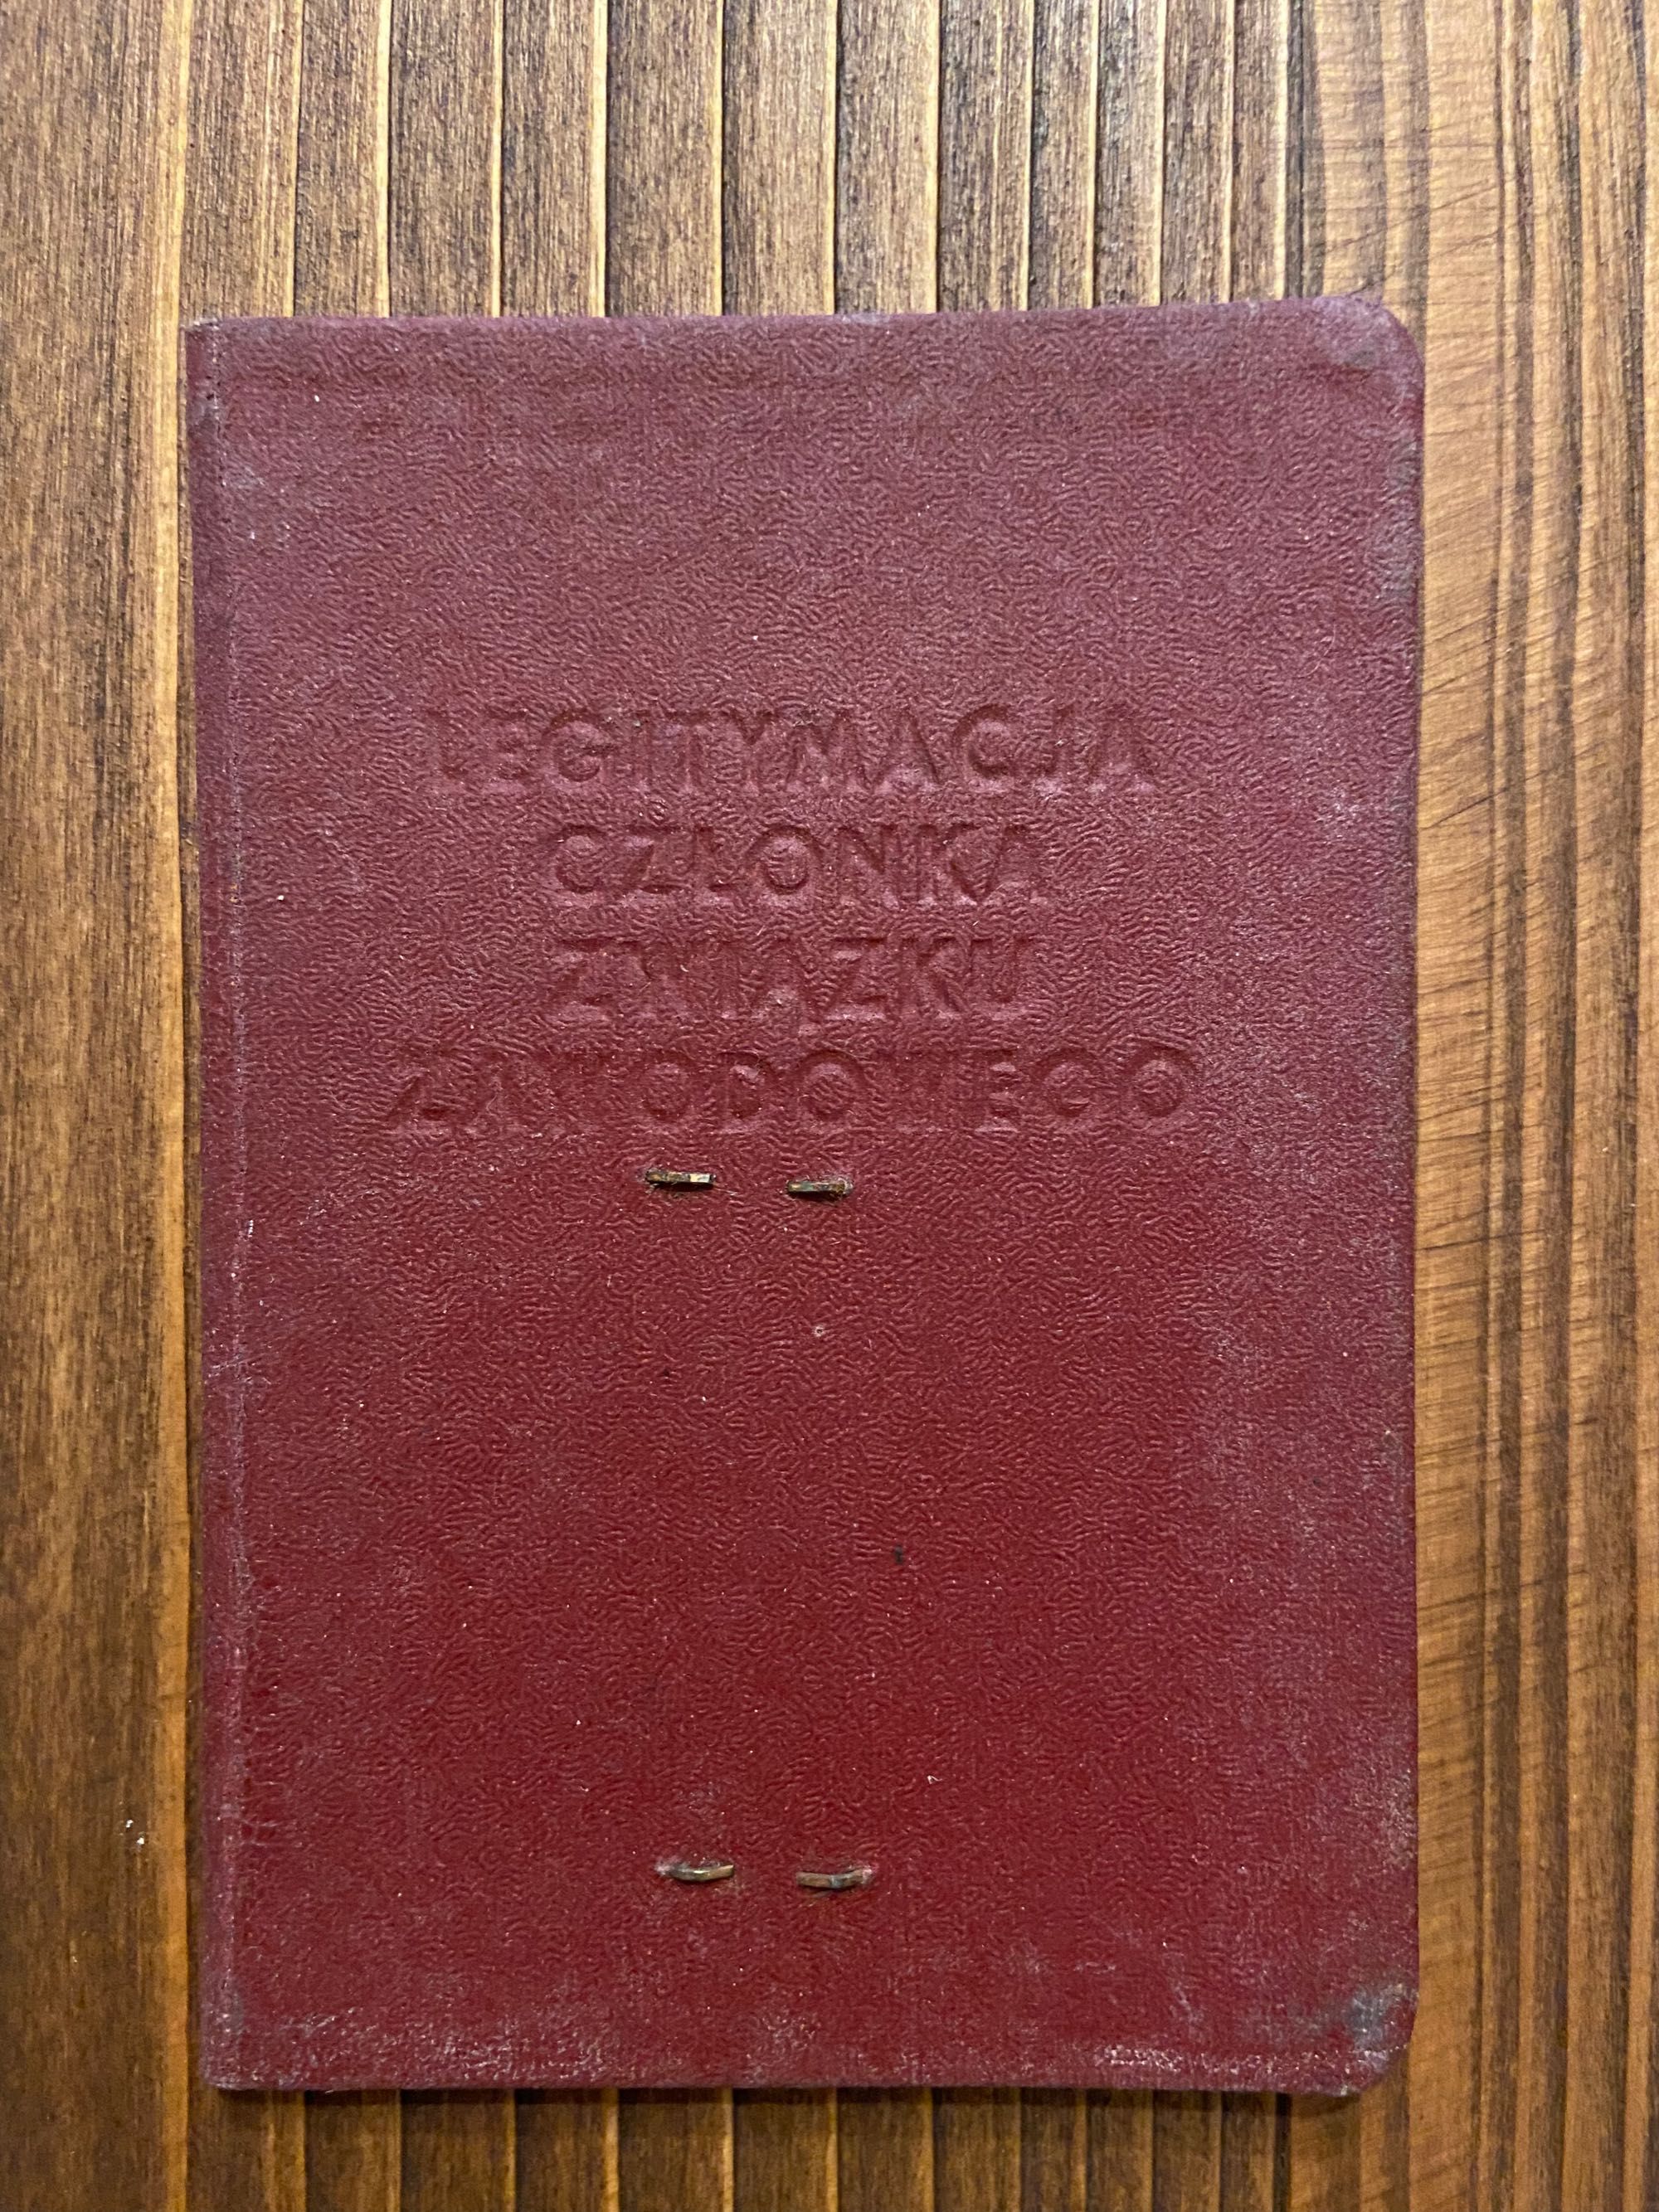 Legitymacja Związku Zawodowego Pracowników Energetyki PRL 1953r.